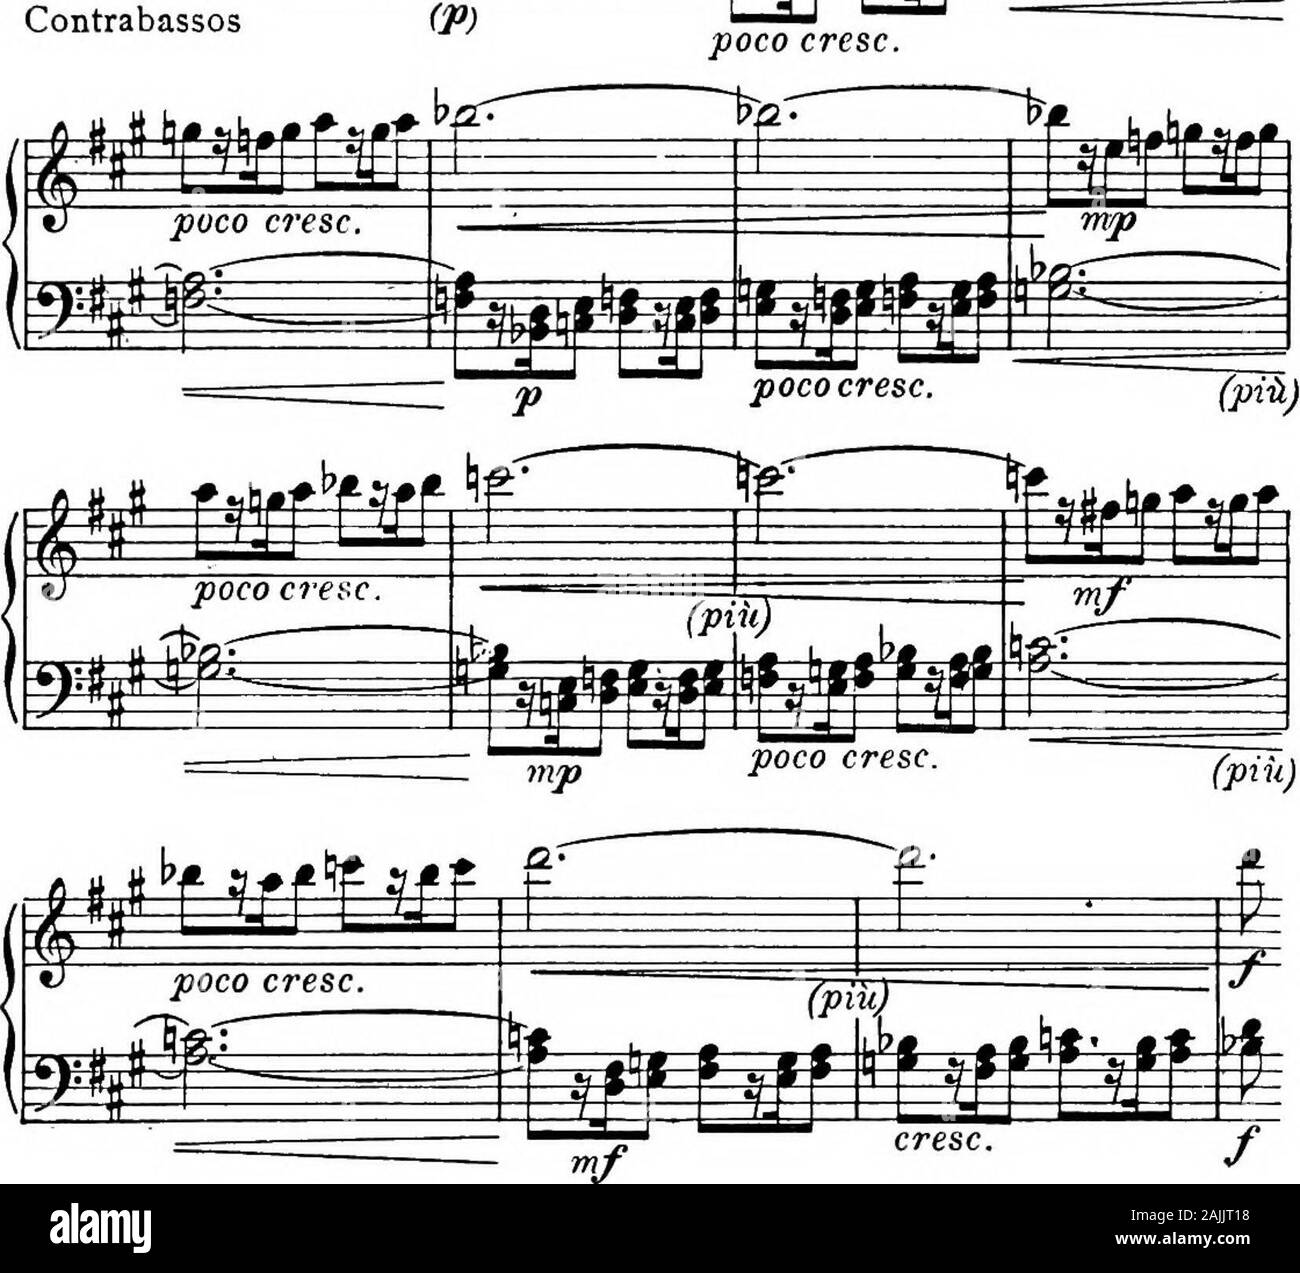 Sulle prestazioni delle sinfonie di Beethoven . esides questo, entrambe le corna e legno-vento potrebbe essere doubledin le quattro barre in discussione (pagina 16, le barre 14 e 15e pagina 17, le barre 2 e 3). Vorrei consigliare il doublingof il legno-vento (se è possibile per il passaggio whichshortly segue. I m. Fii=t^ !Jf-H 7a I F^te=1 "/ "/ sf Pagina 18, bar 10 a pagina 19, bar 8. Ho succeededin ottenendo un ottimo effetto in questo potente gradationby distribuendo la sostenuta crescendo di corna in sucha modo tra le corde degli strumenti-, che il volume ofsound nelle note sostenute sono aumentate in un Foto Stock